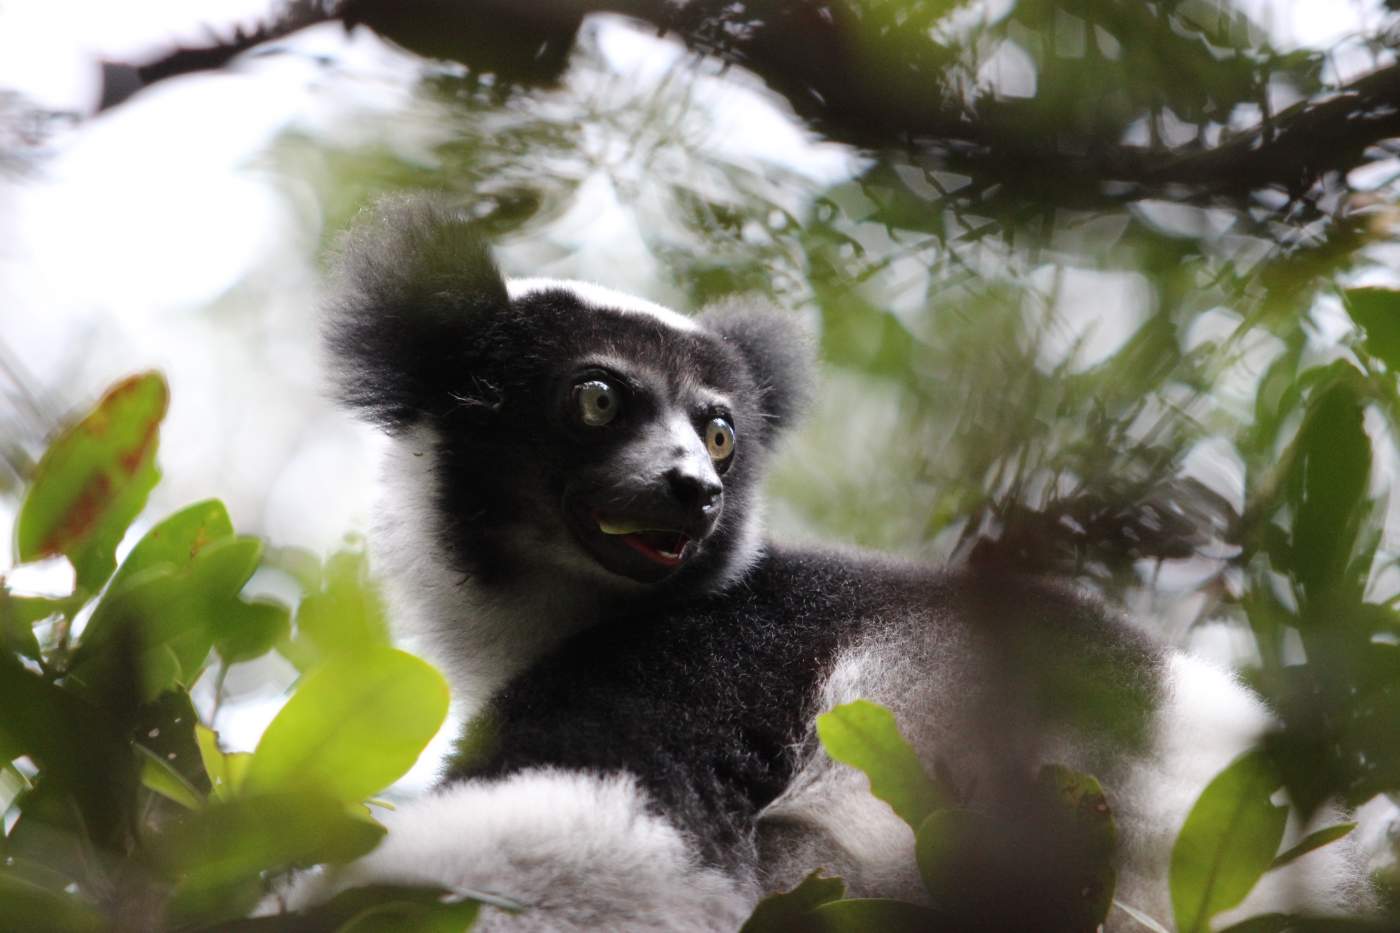 Ein Katta (Lemur) in freier Wildbahn, Motorradreise Madagaskar